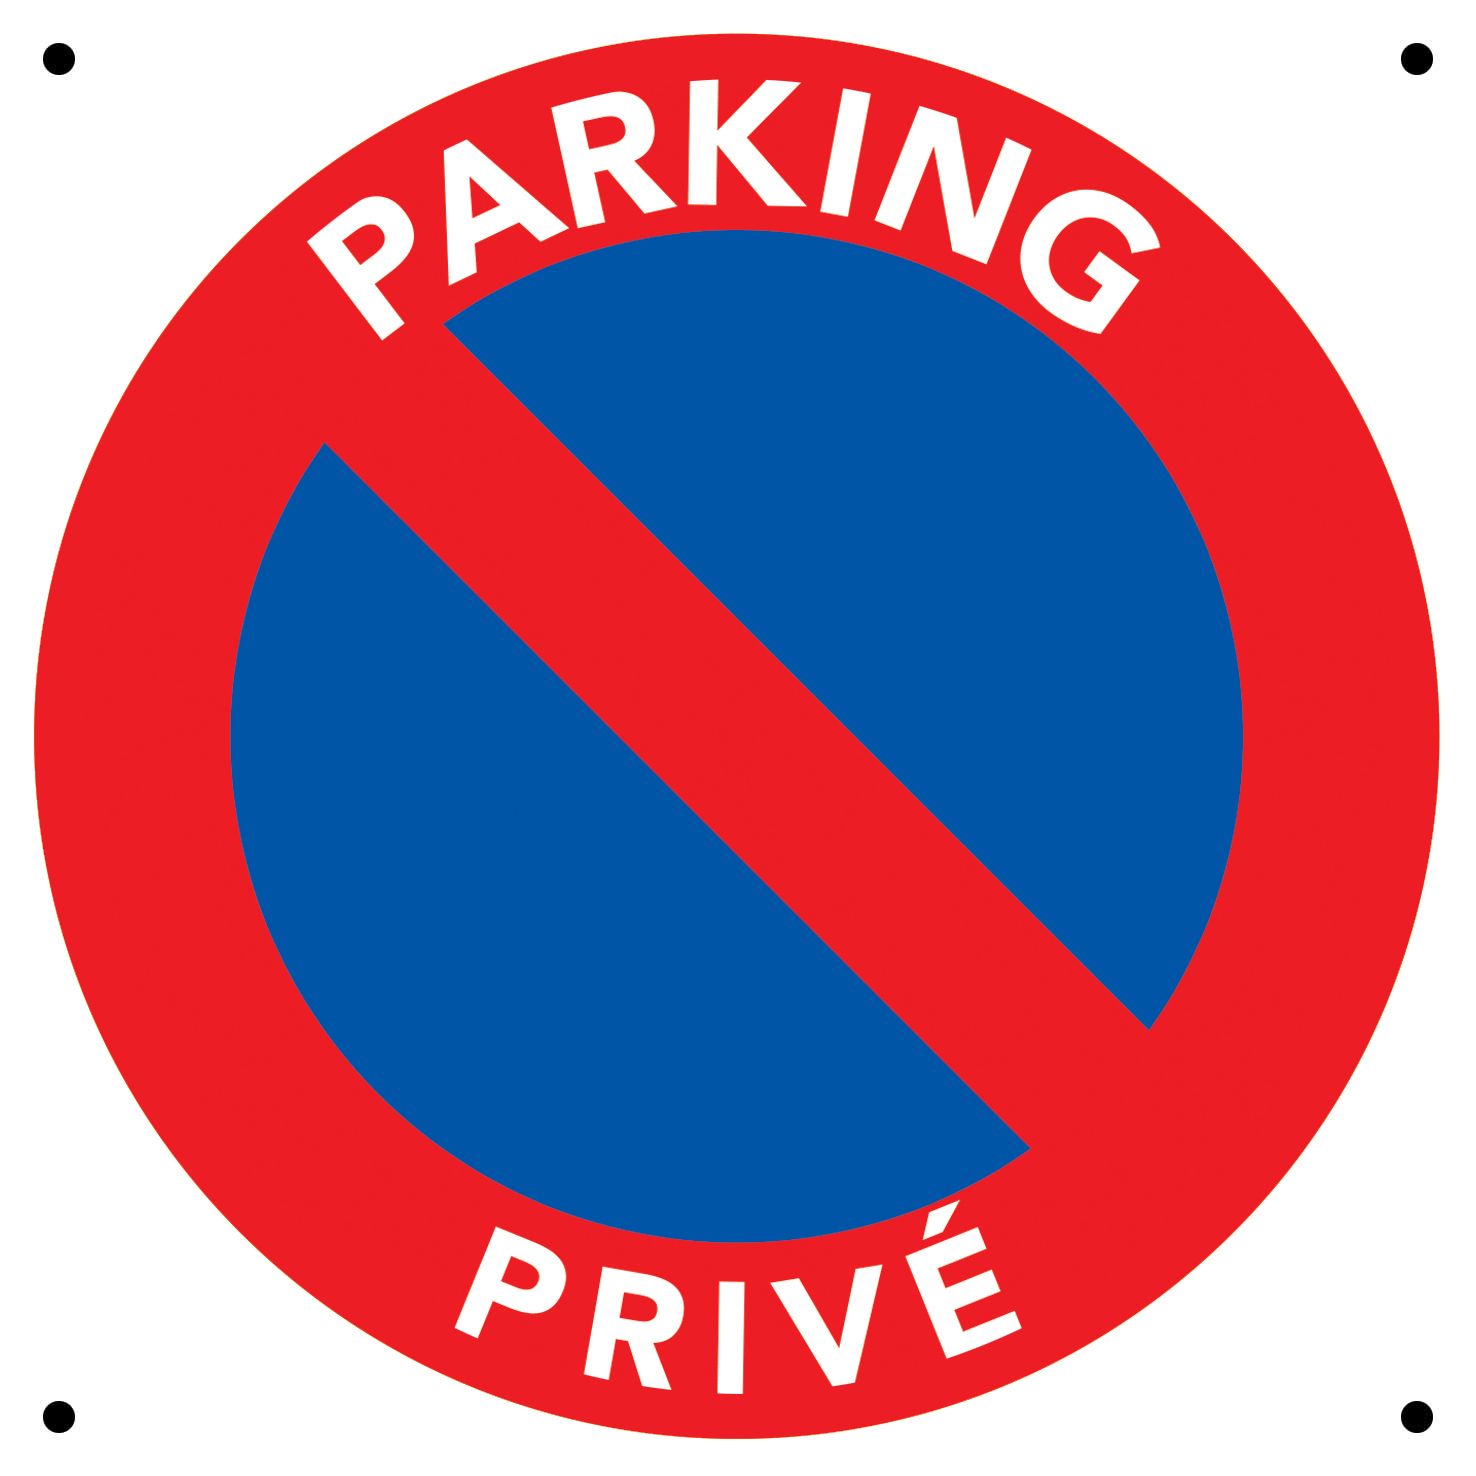 copy of Panneau Parking